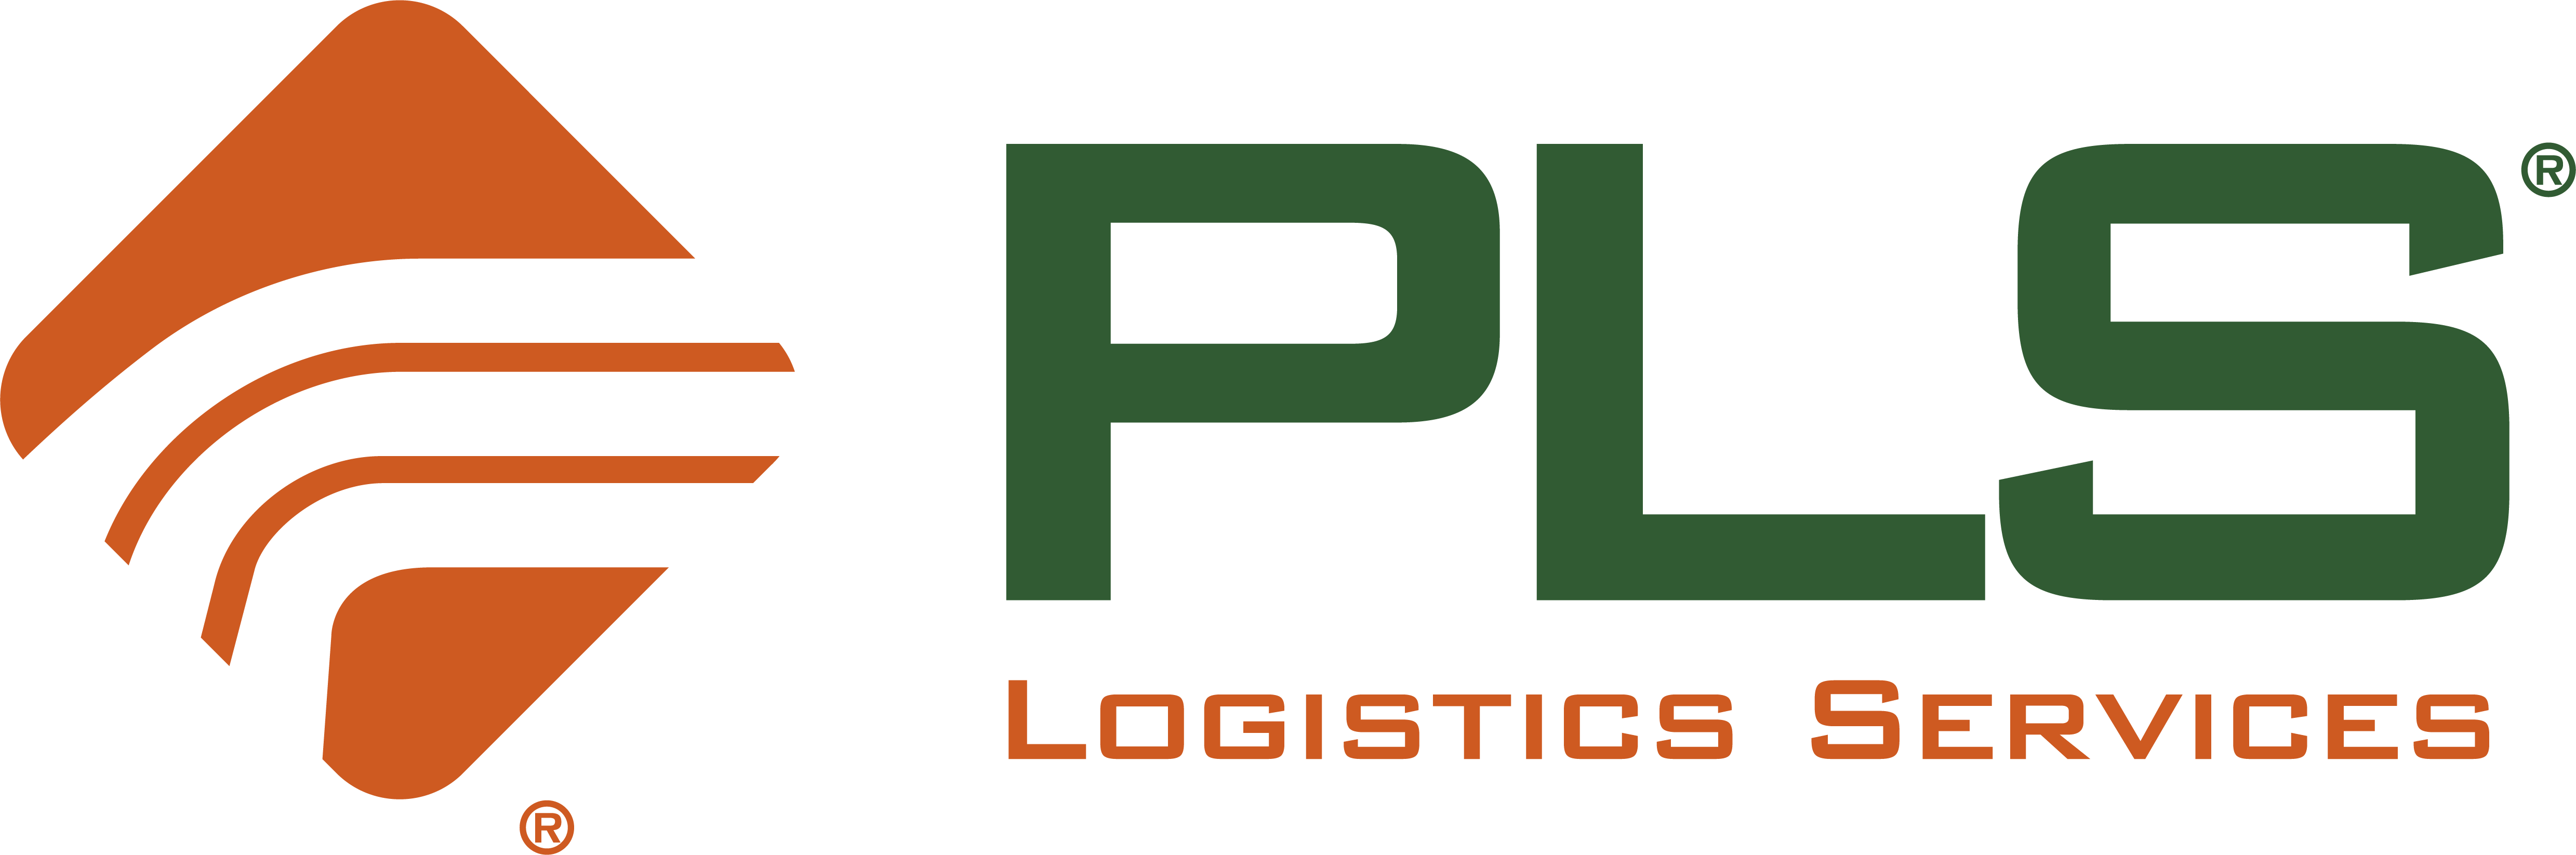 PLS Logistics Services 